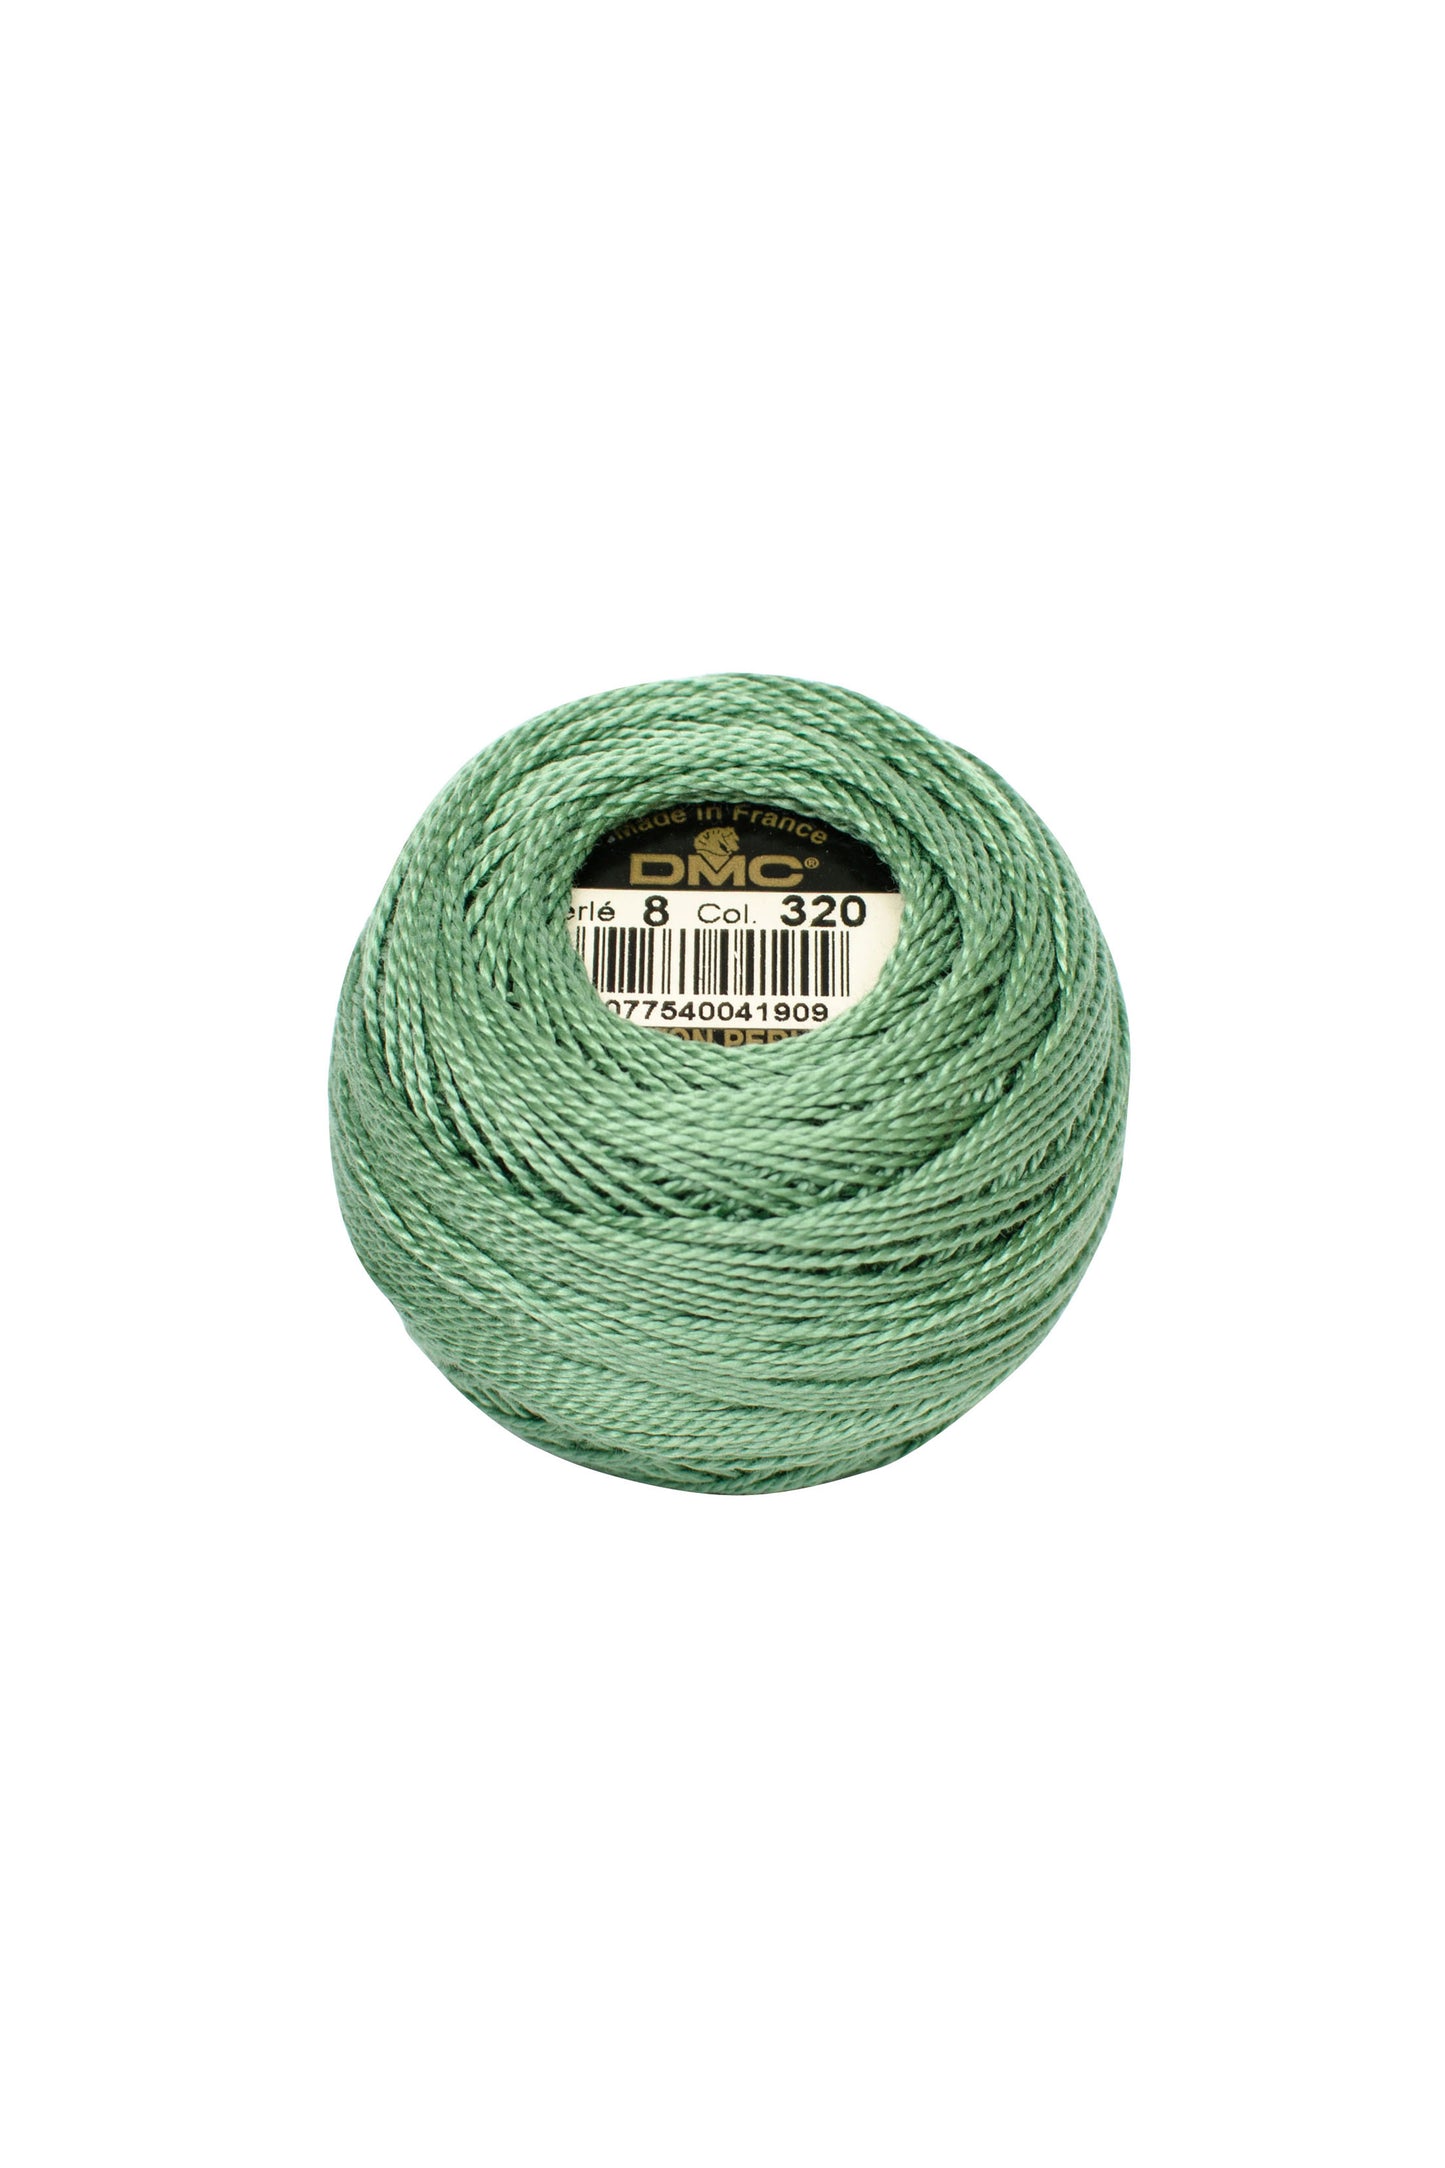 320 Medium Pistachio Green – DMC #5 Perle Cotton Skein